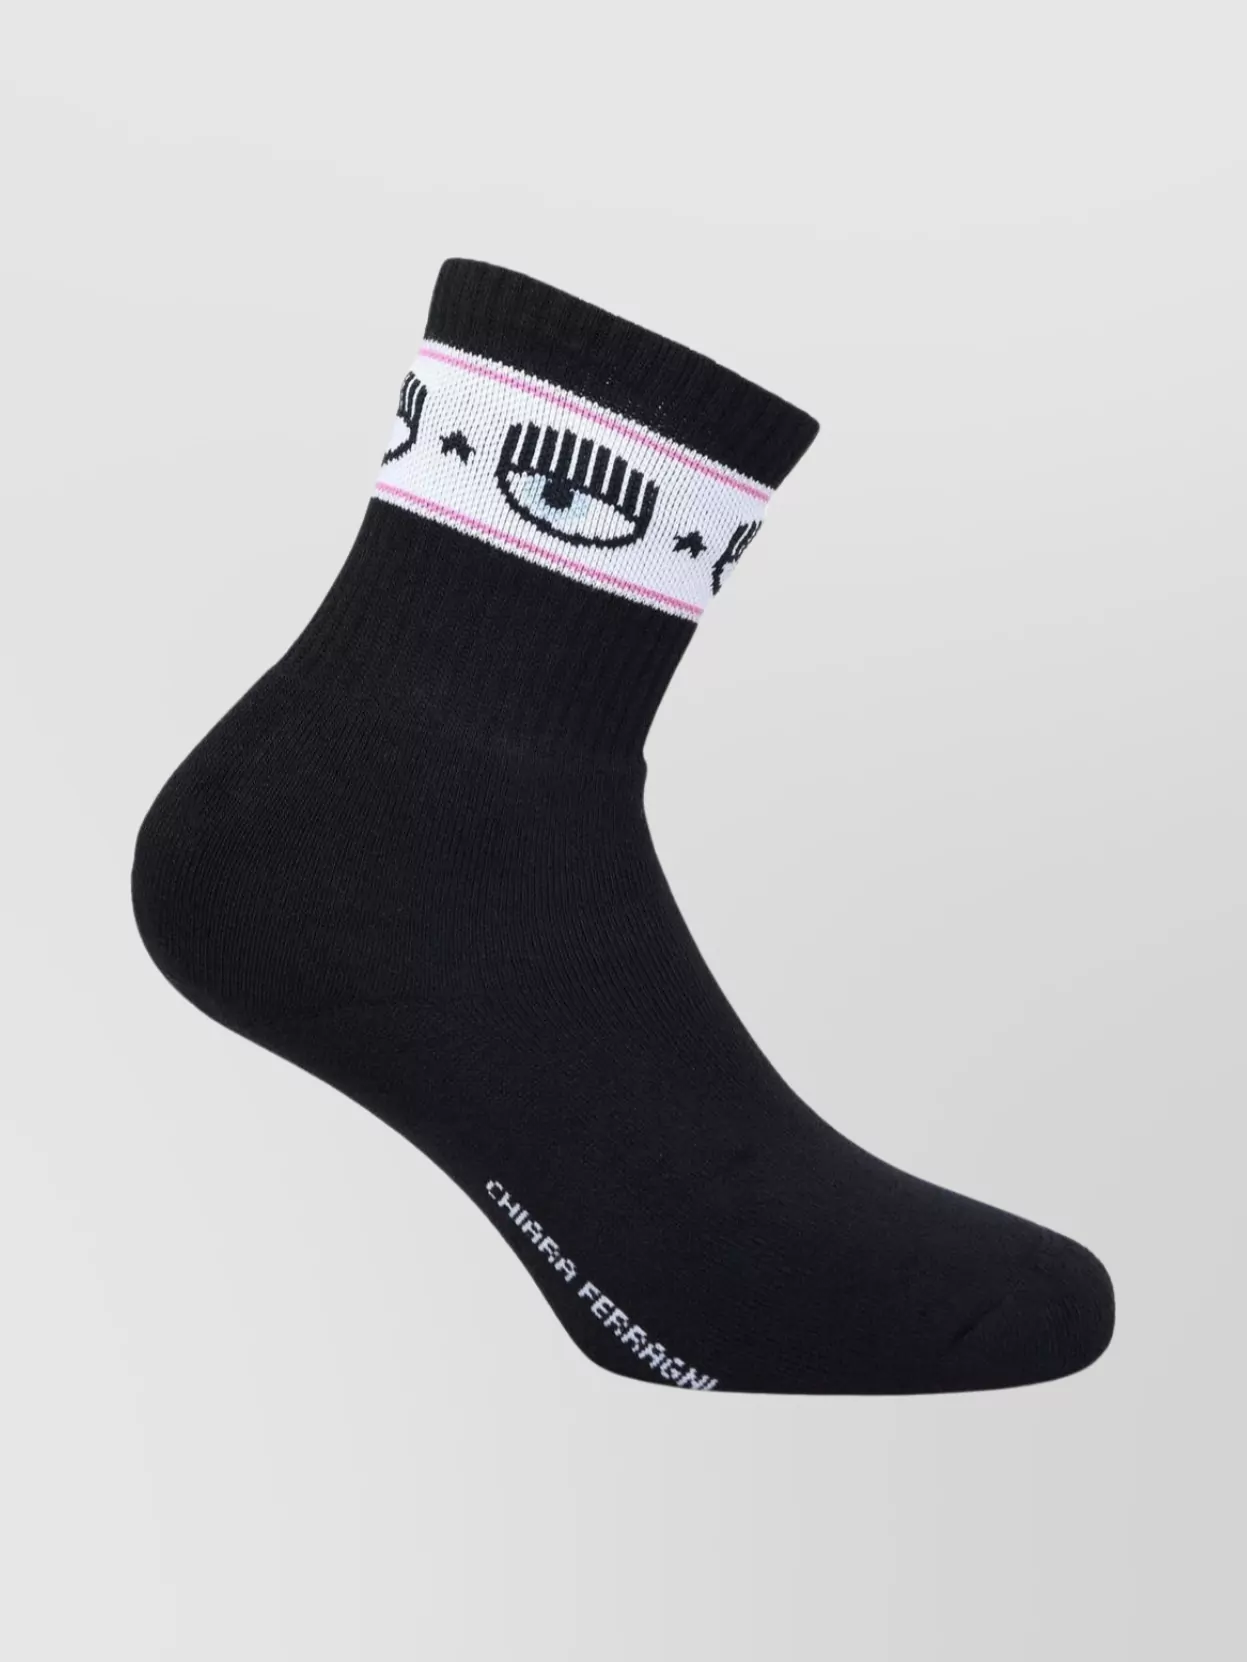 Shop Chiara Ferragni Ankle Length Ribbed Cuffs Socks